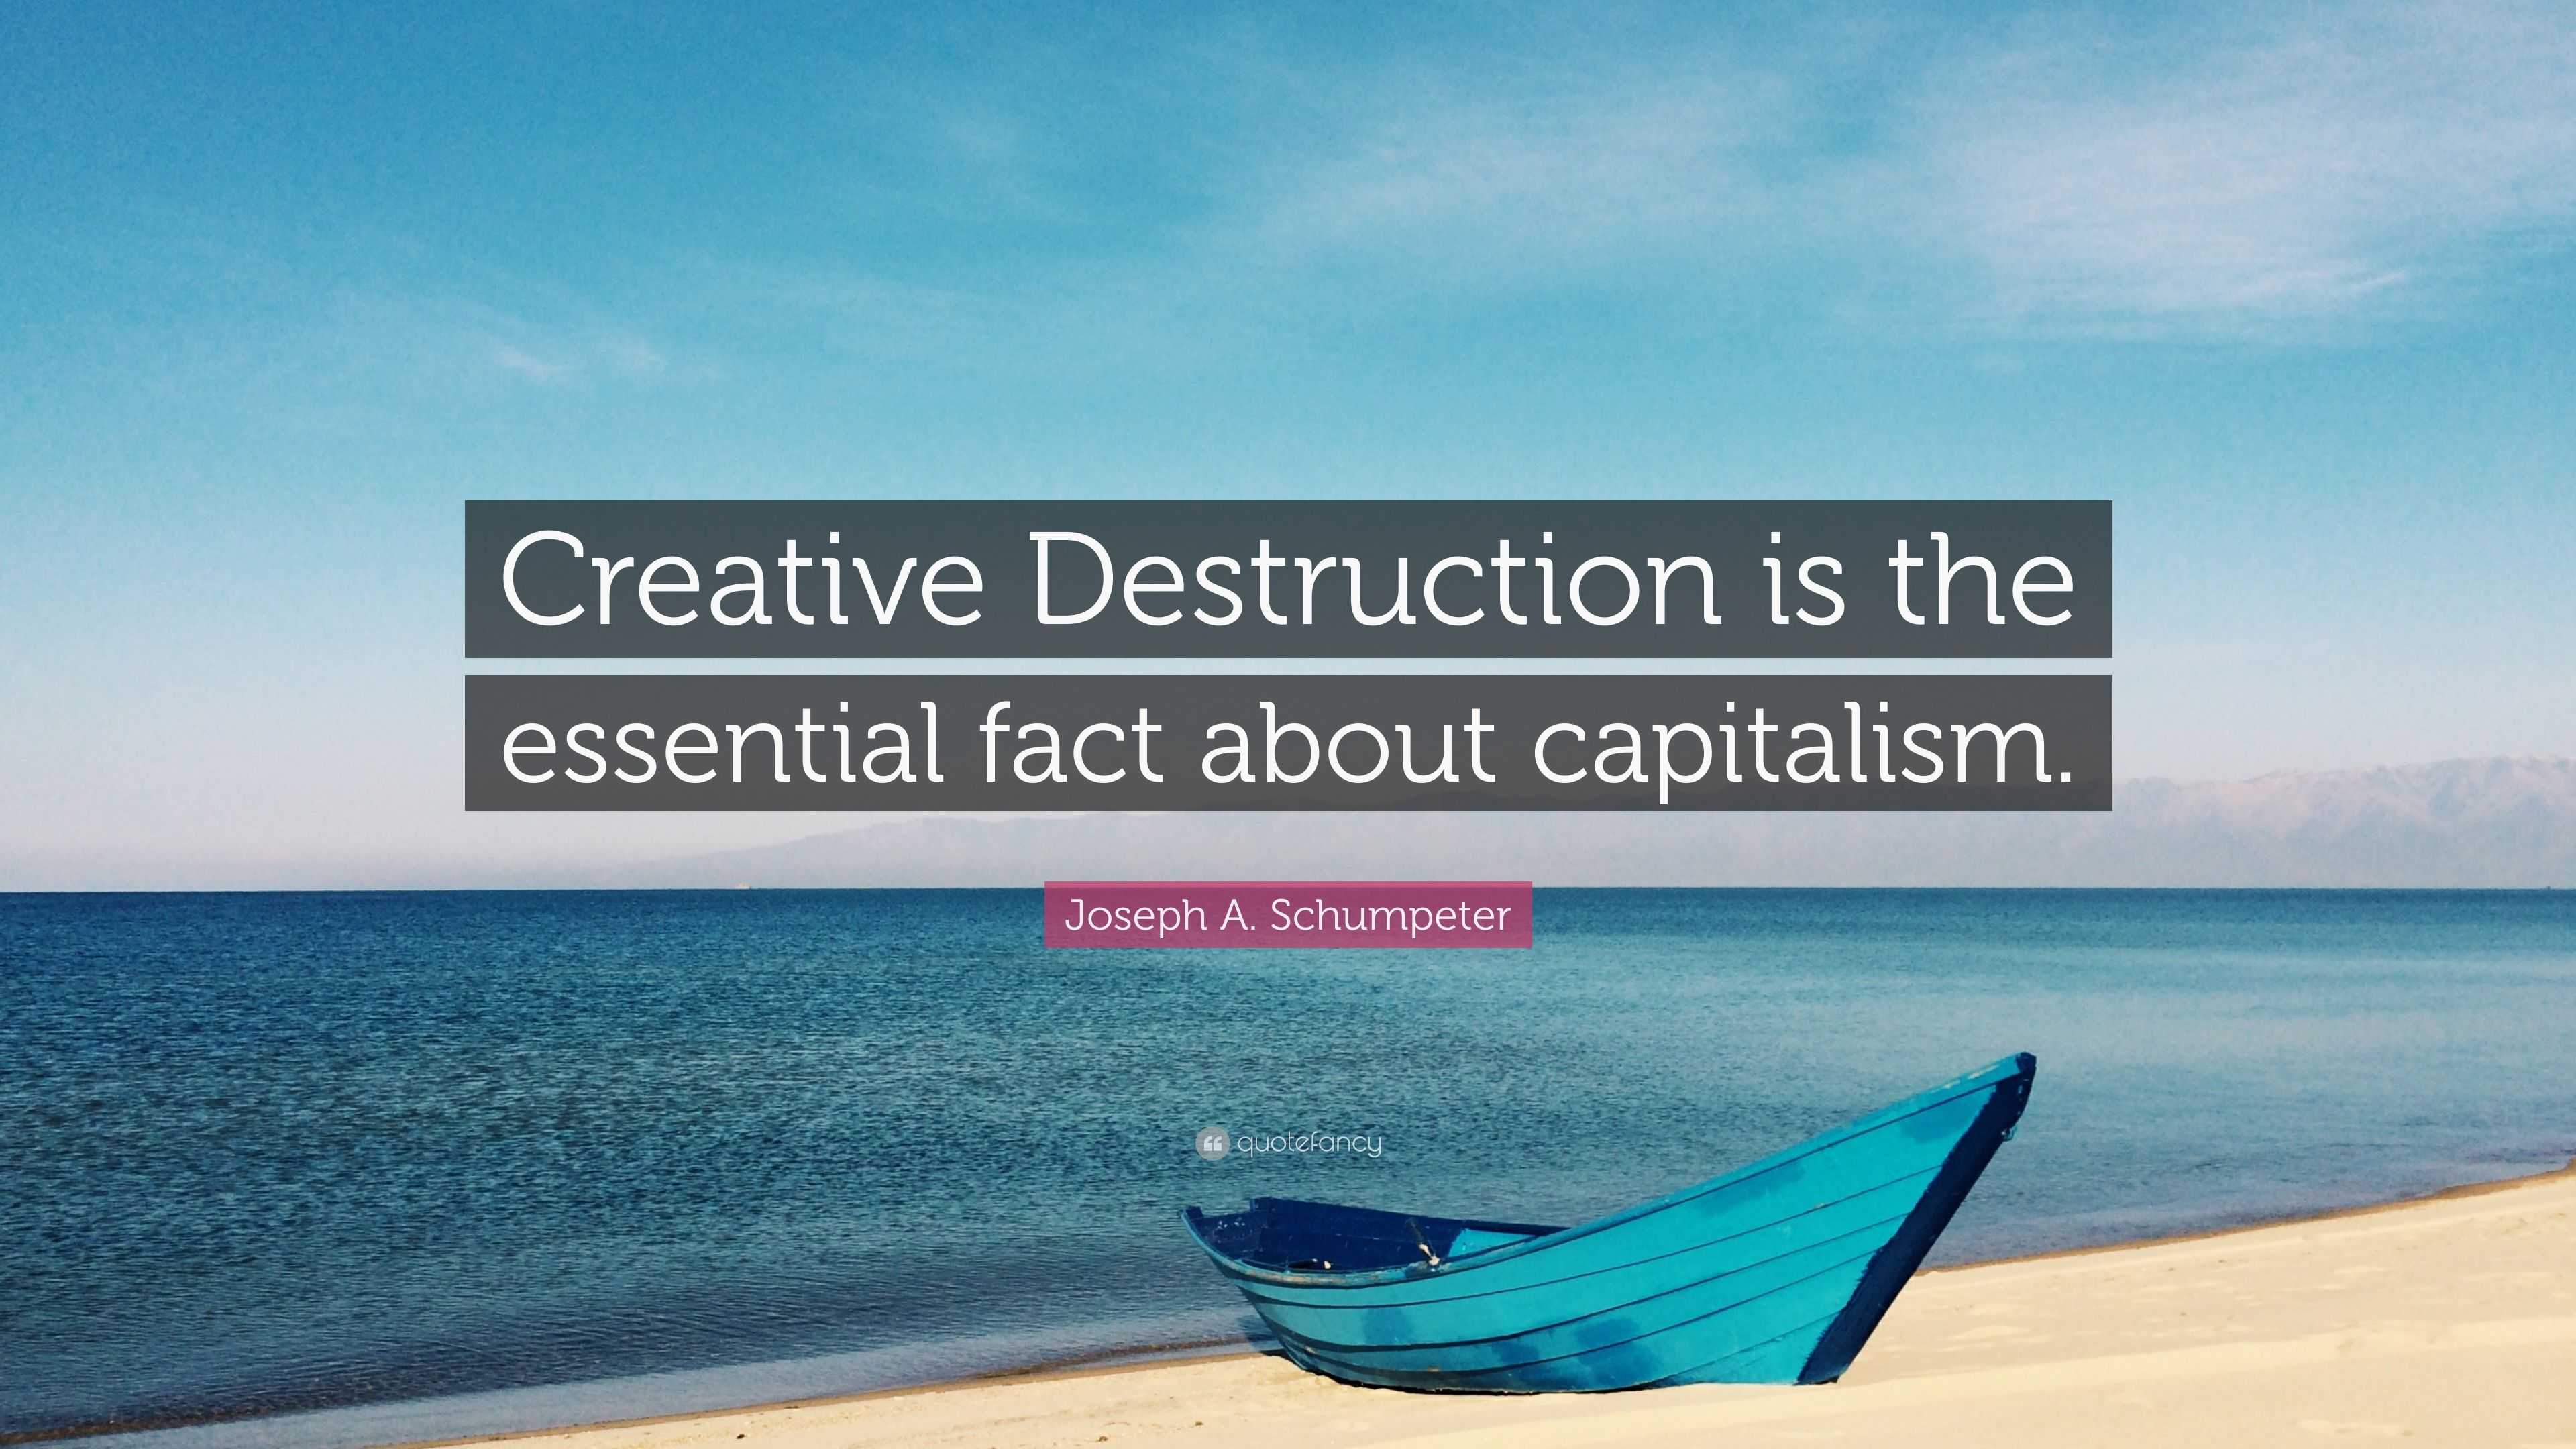 creative destruction definition economics